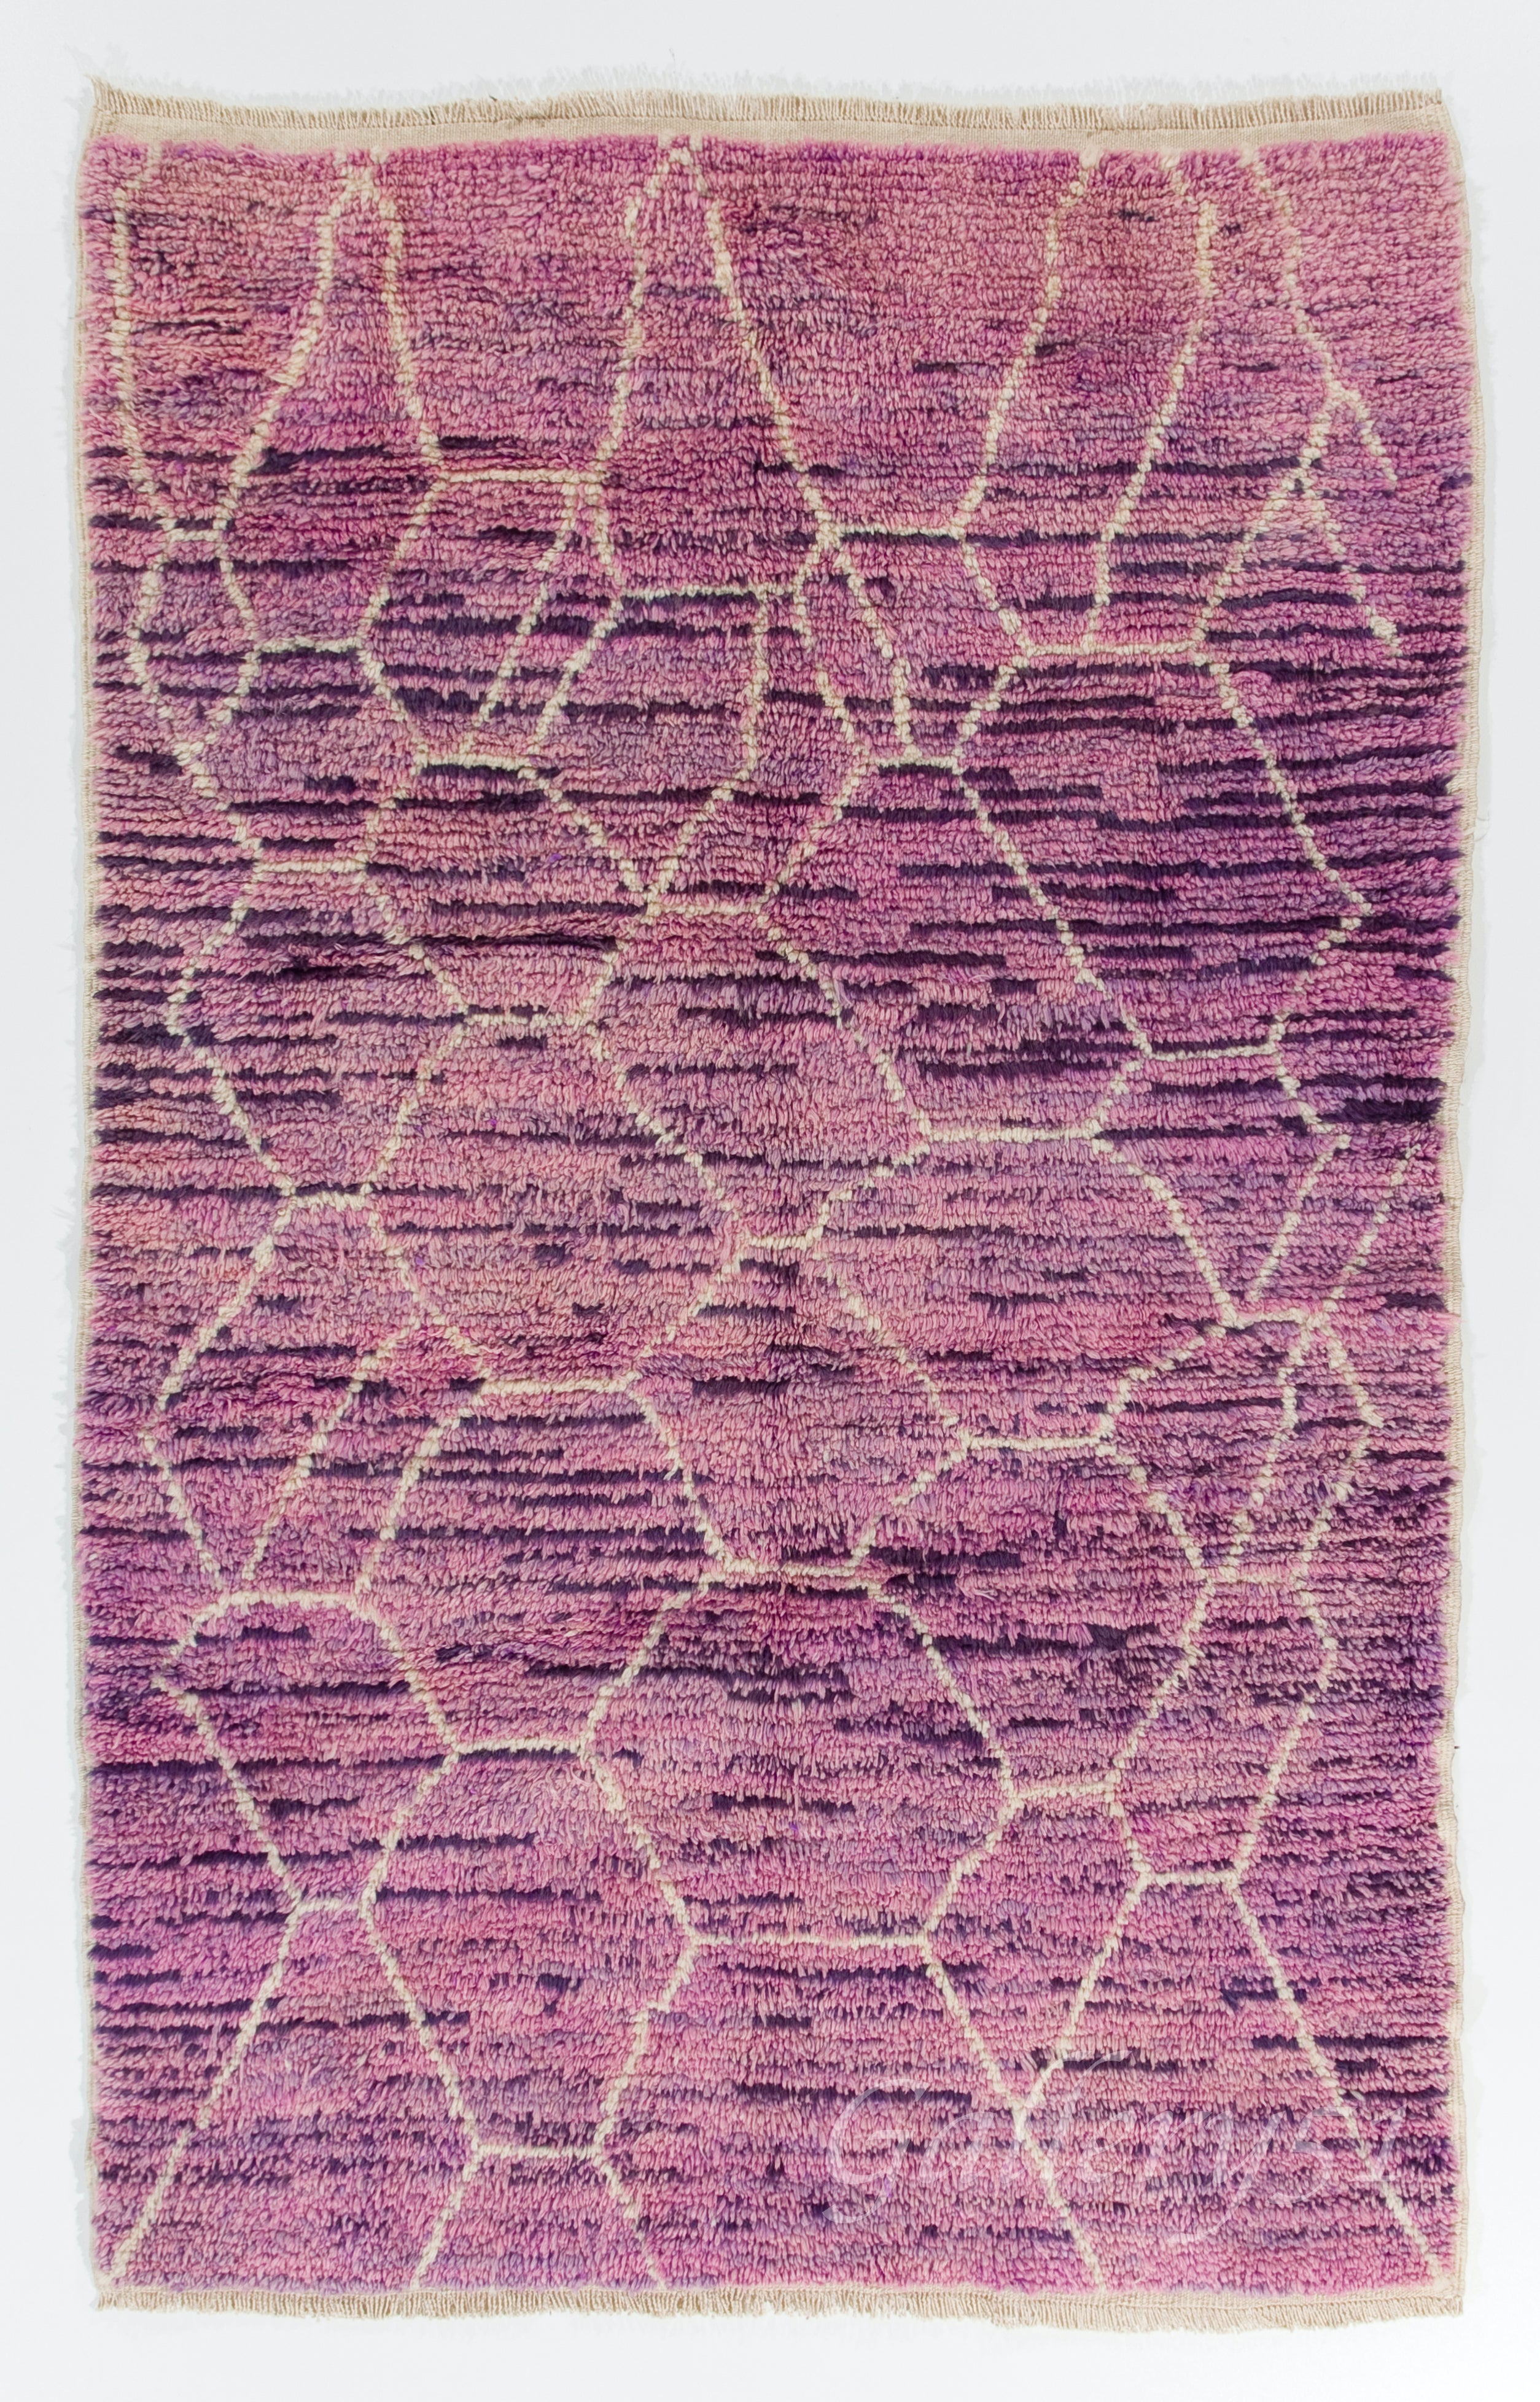 Handgefertigter marokkanischer Teppich in den Farben Lila und Orchidee. Alle Wolle. Kundenspezifische Optionen verfügbar